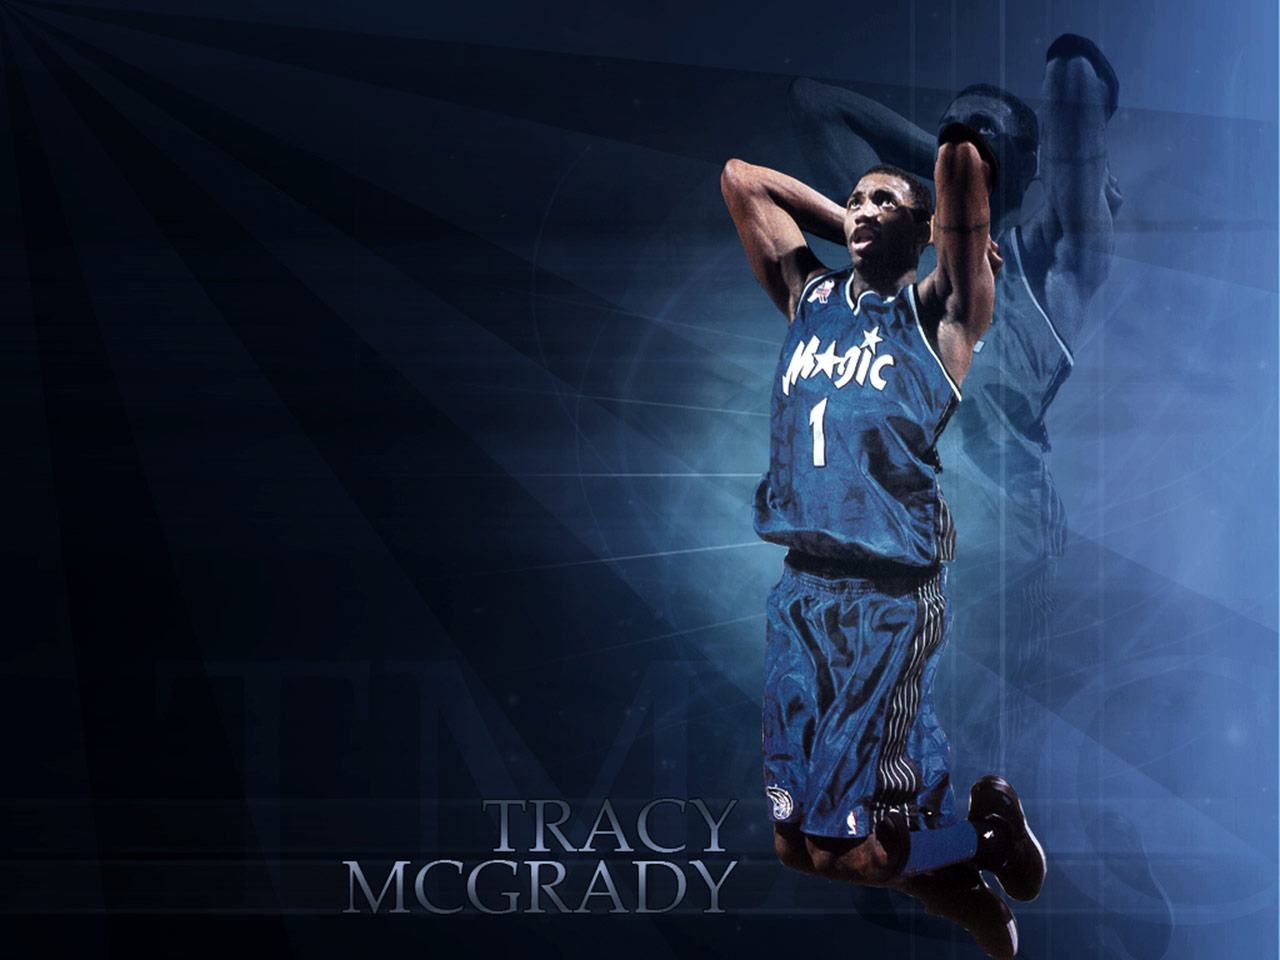 carta da parati tracy mcgrady,giocatore di pallacanestro,pallacanestro,font,evento,fotografia